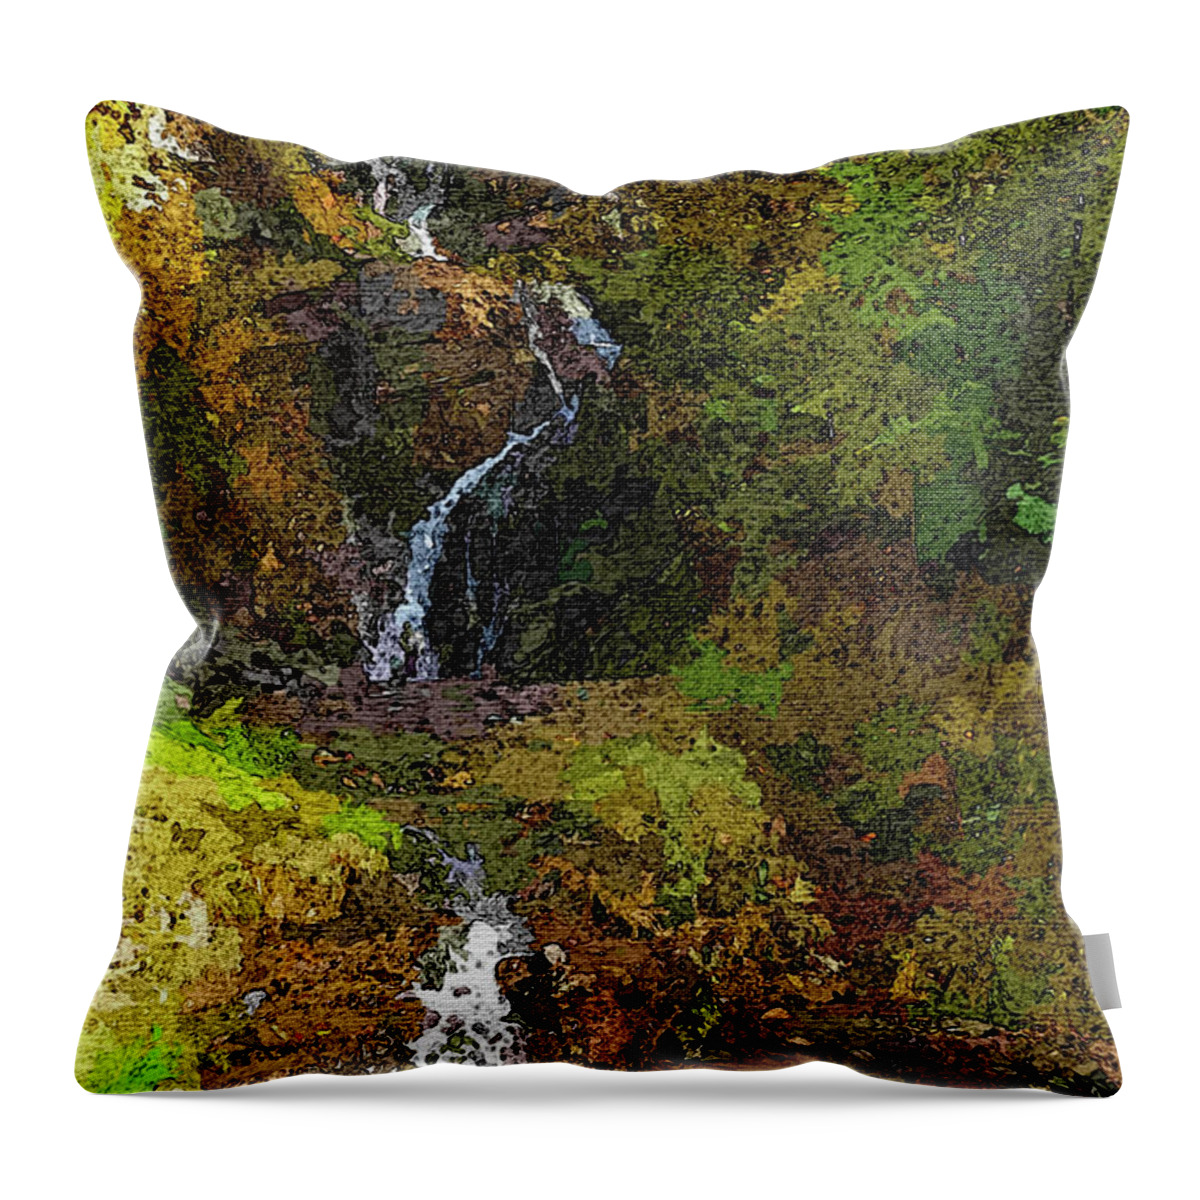 Fiest Throw Pillow featuring the photograph Fiest Creek Falls by Robert Bissett